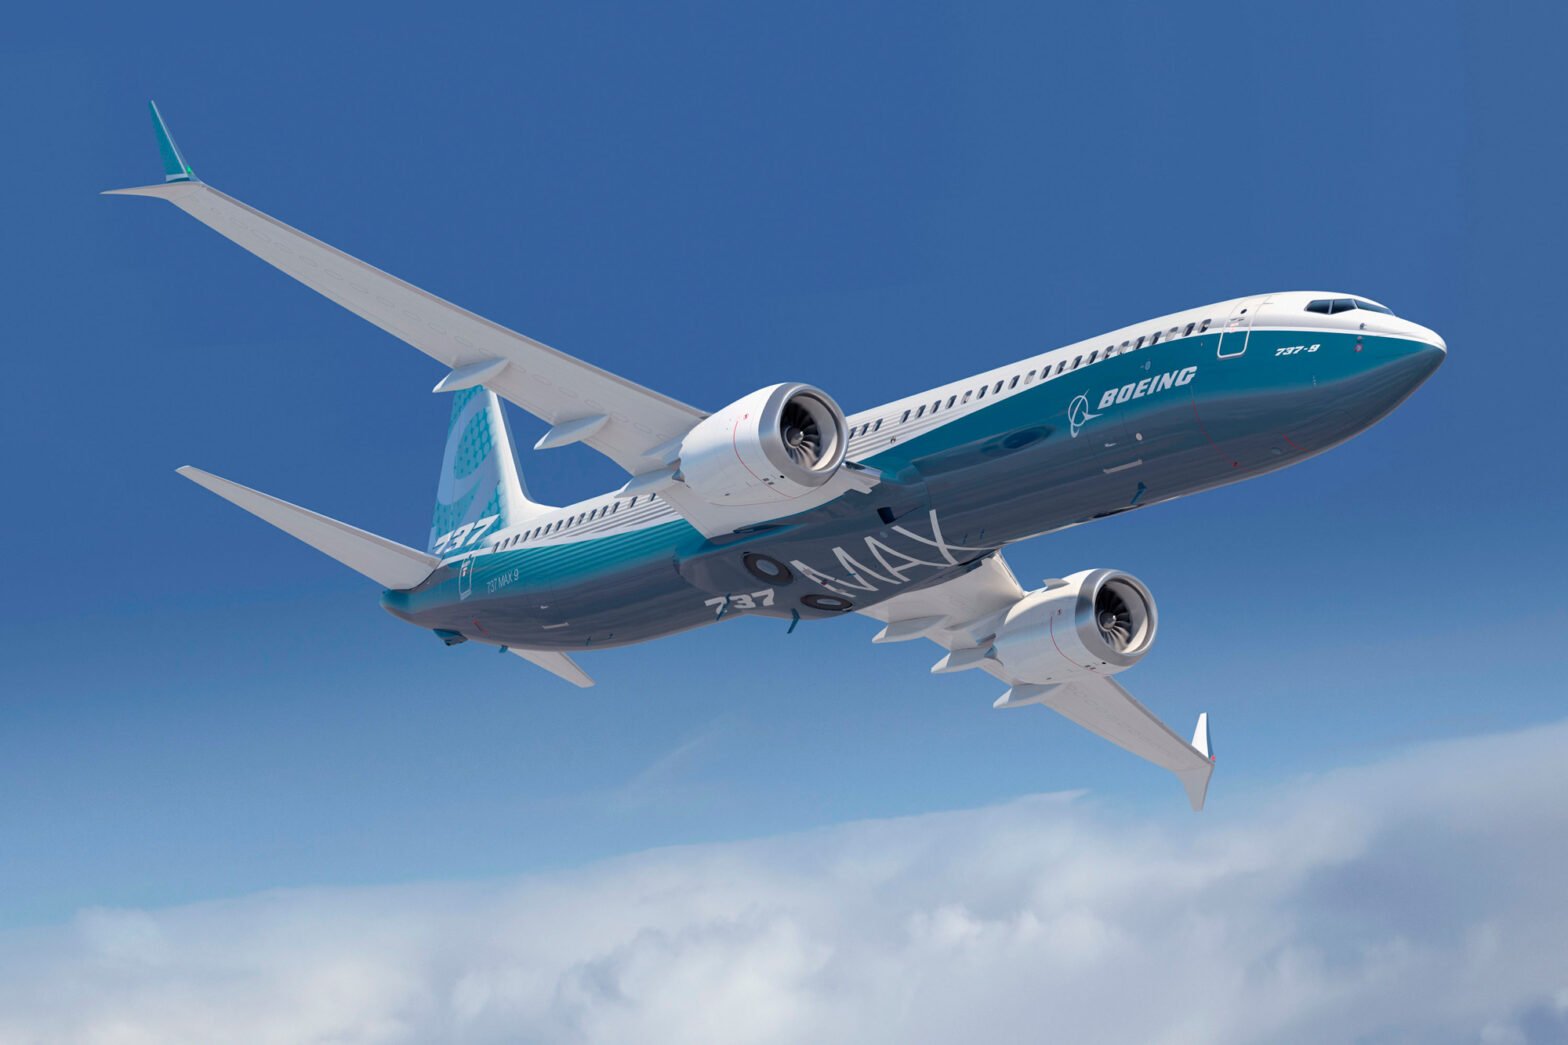 चेतावनी की घंटी बज रही है: क्या अनग्राउंडेड 737 MAX वाकई सुरक्षित है?